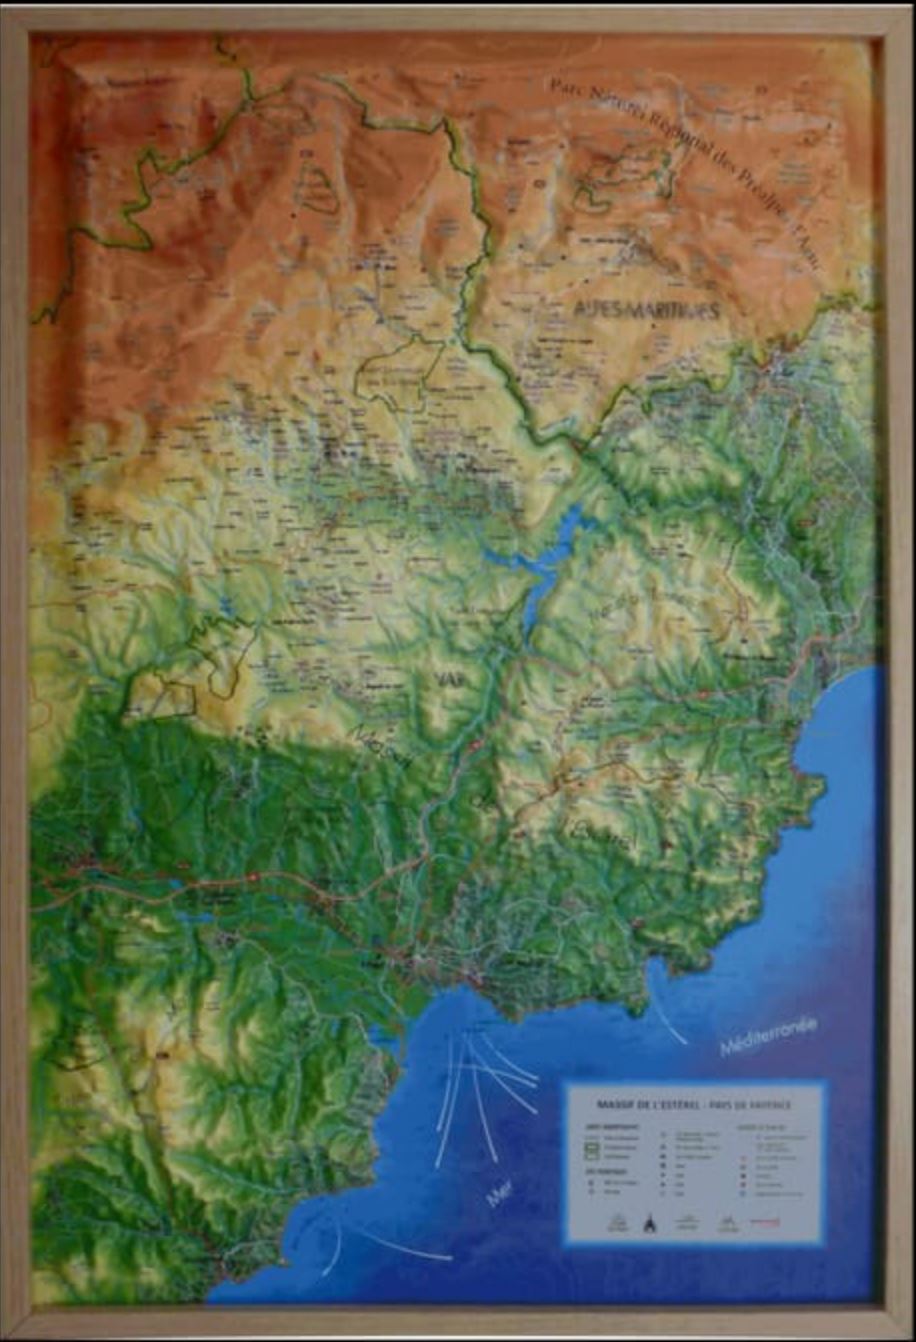 Carte murale en relief - Massif de l'Estérel et Pays de Fayence - 41 cm x 61 cm | 3D Map carte relief 3D Map 